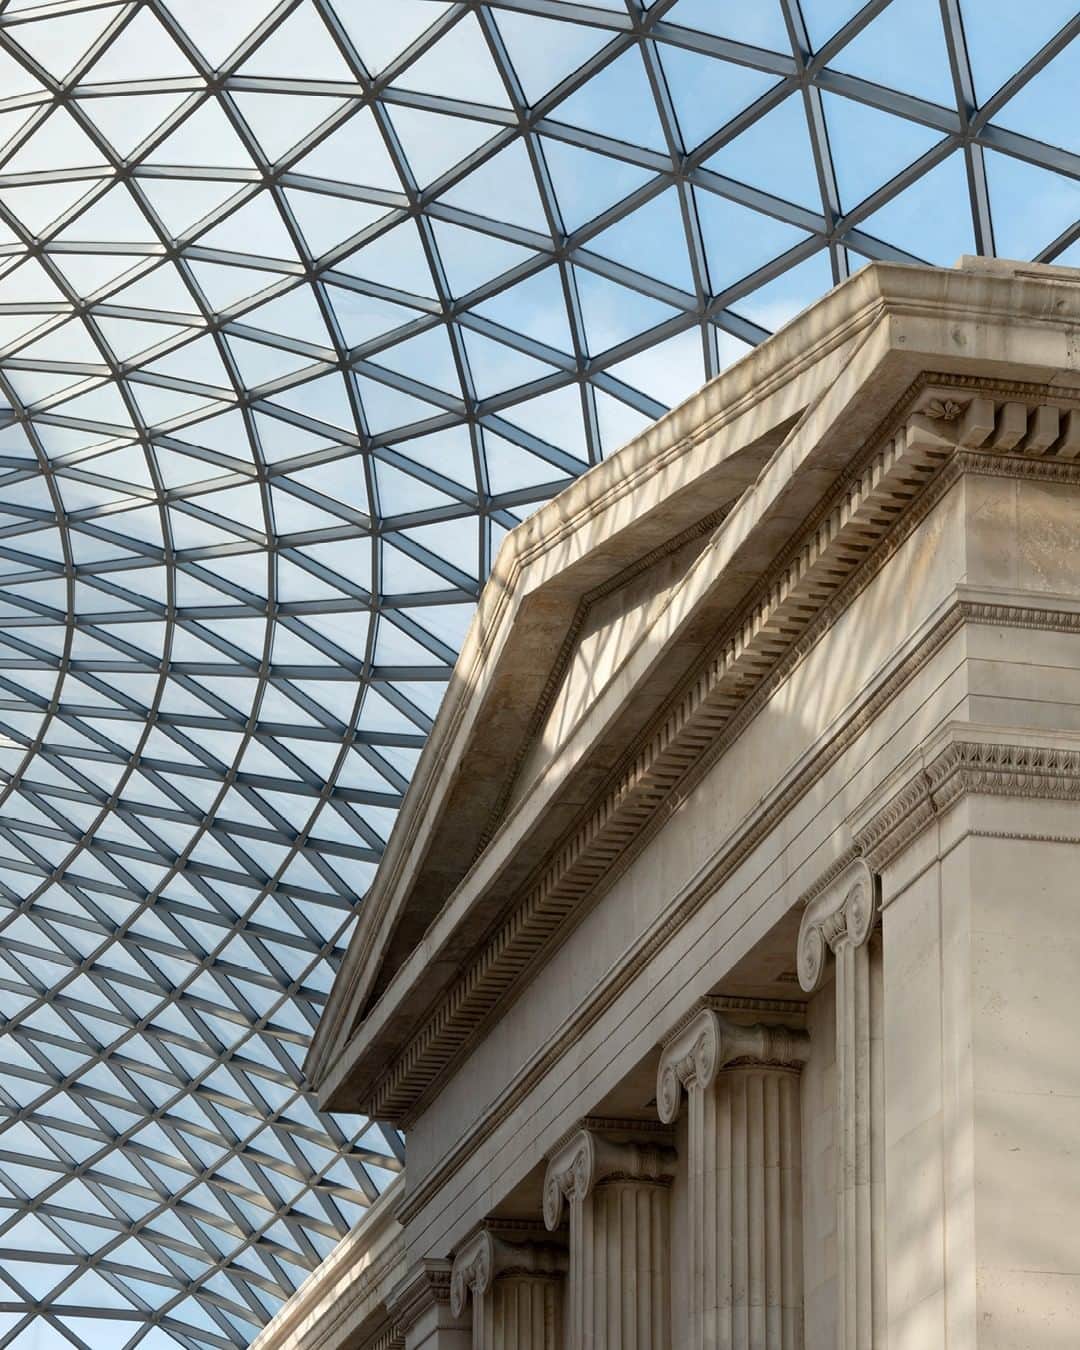 大英博物館のインスタグラム